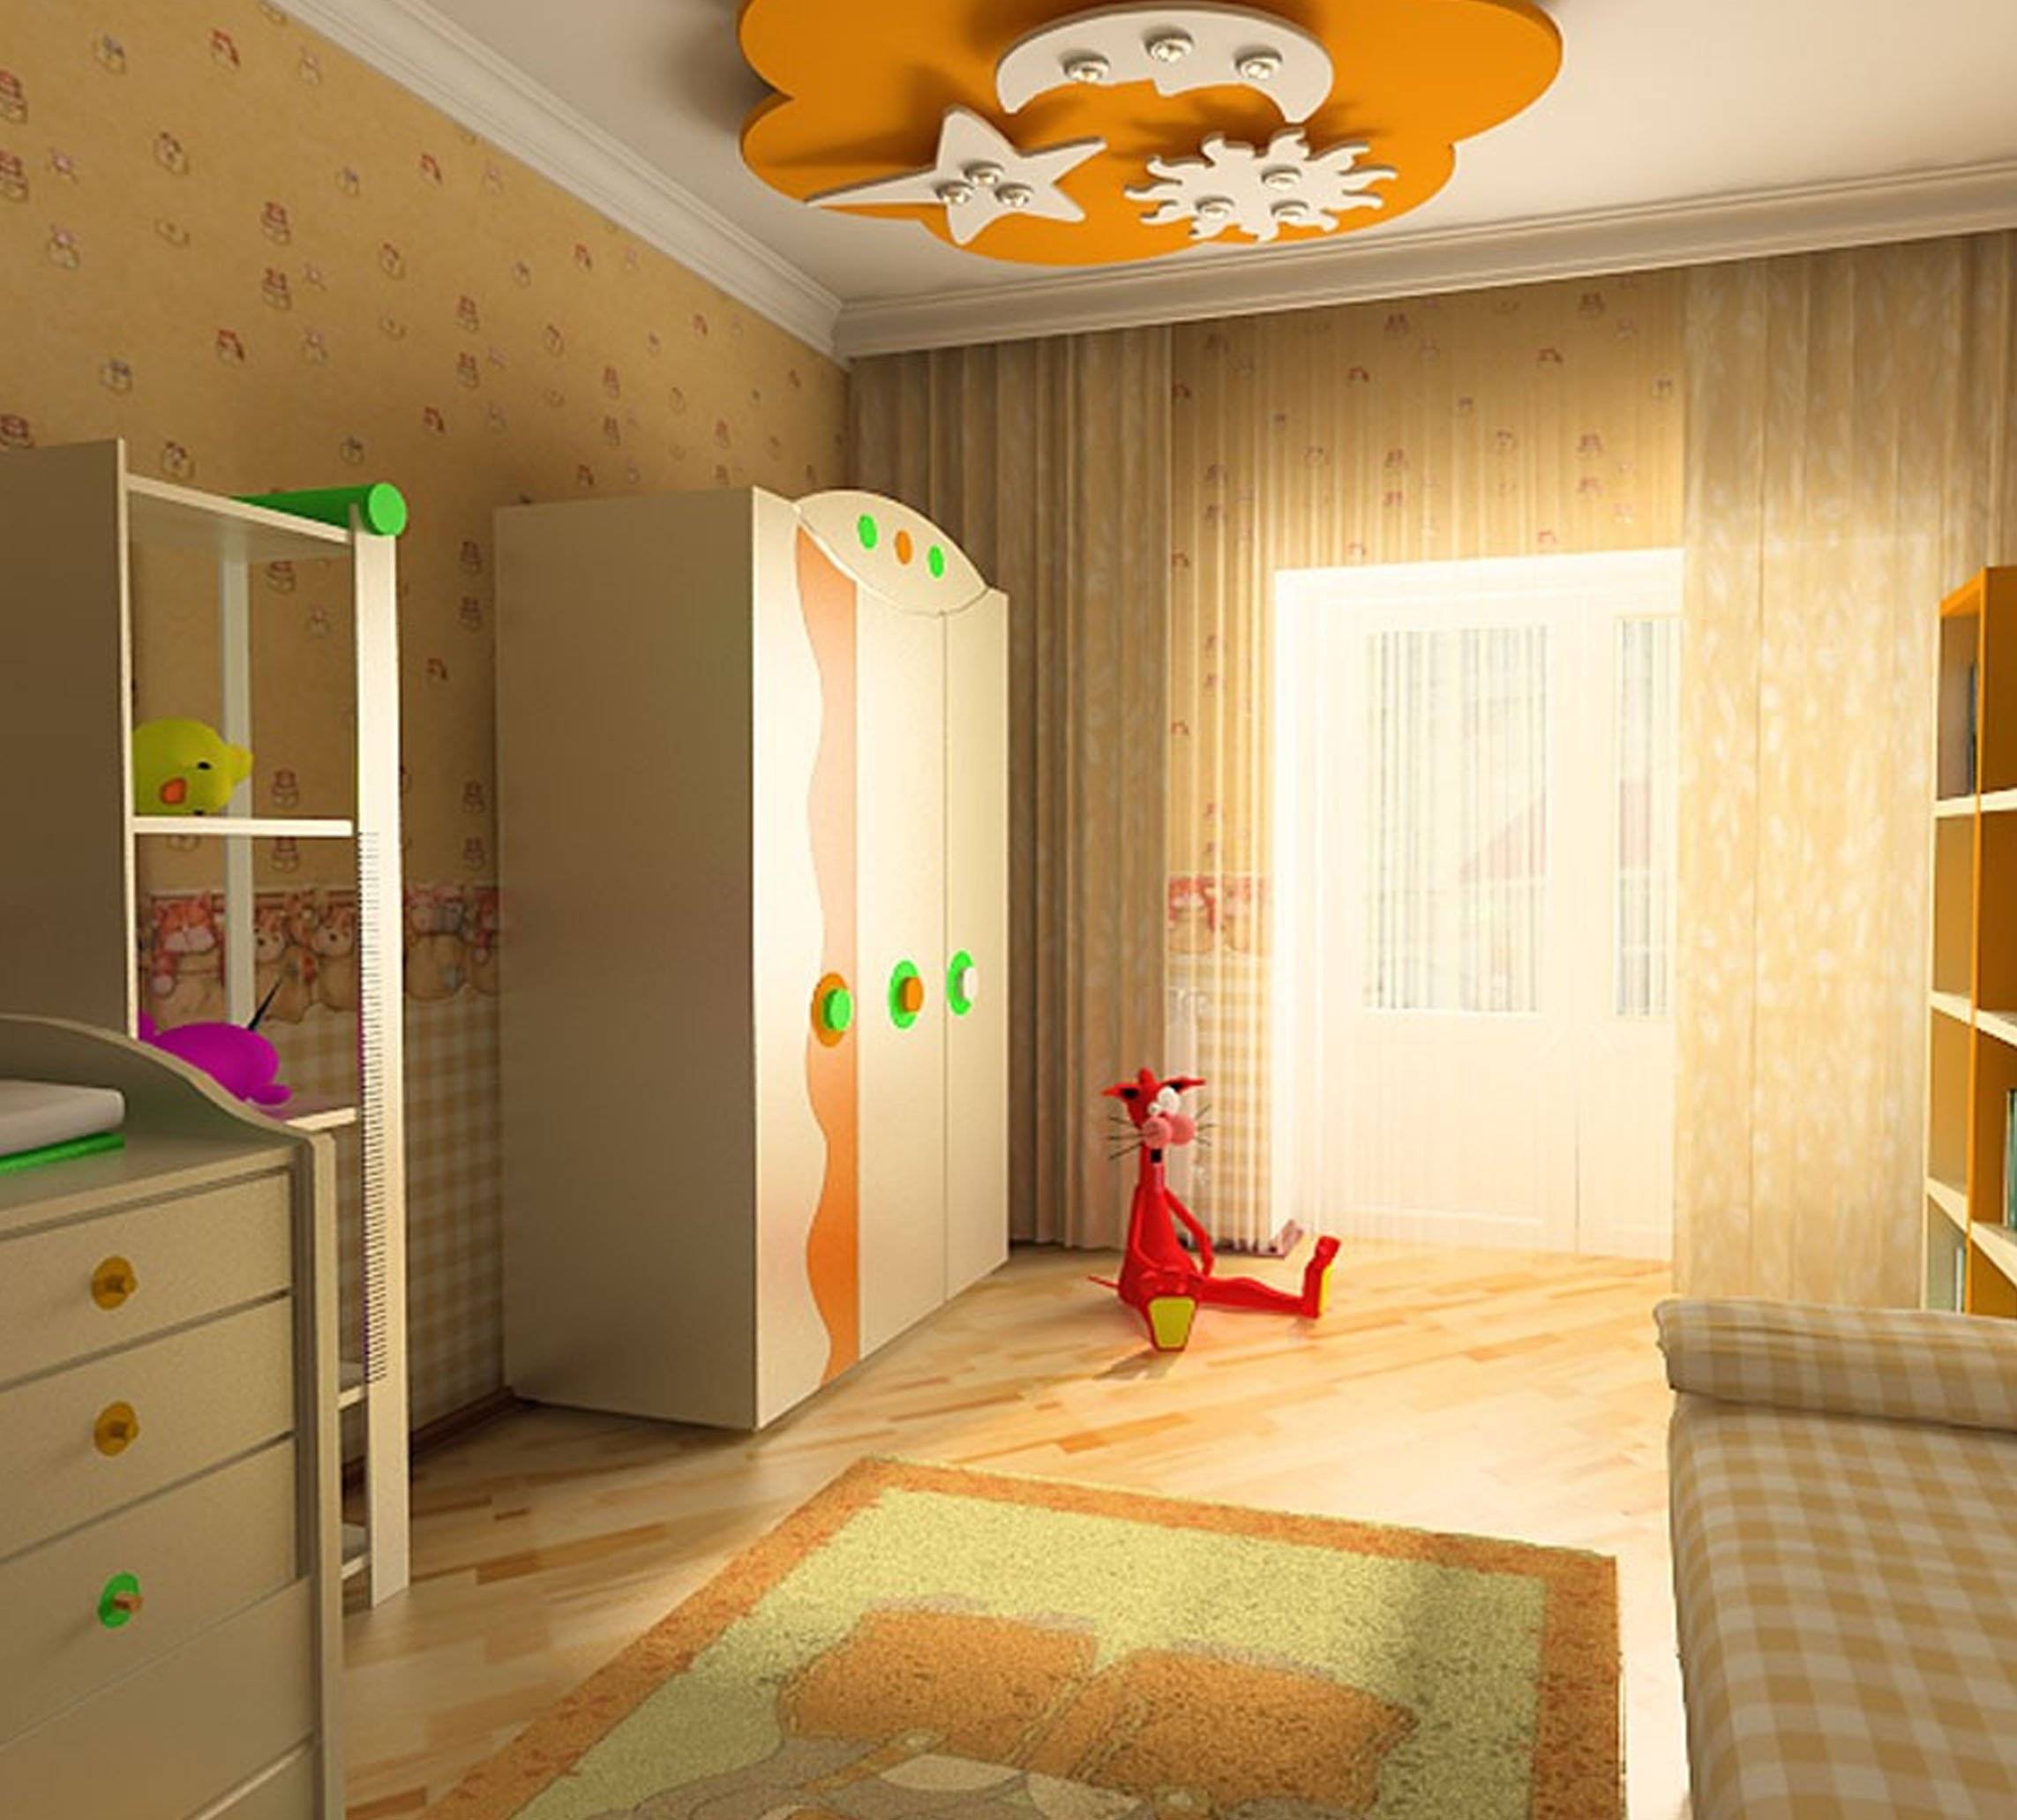 Зонирование комнаты родителей и ребенка вместе - новые интересные идеи